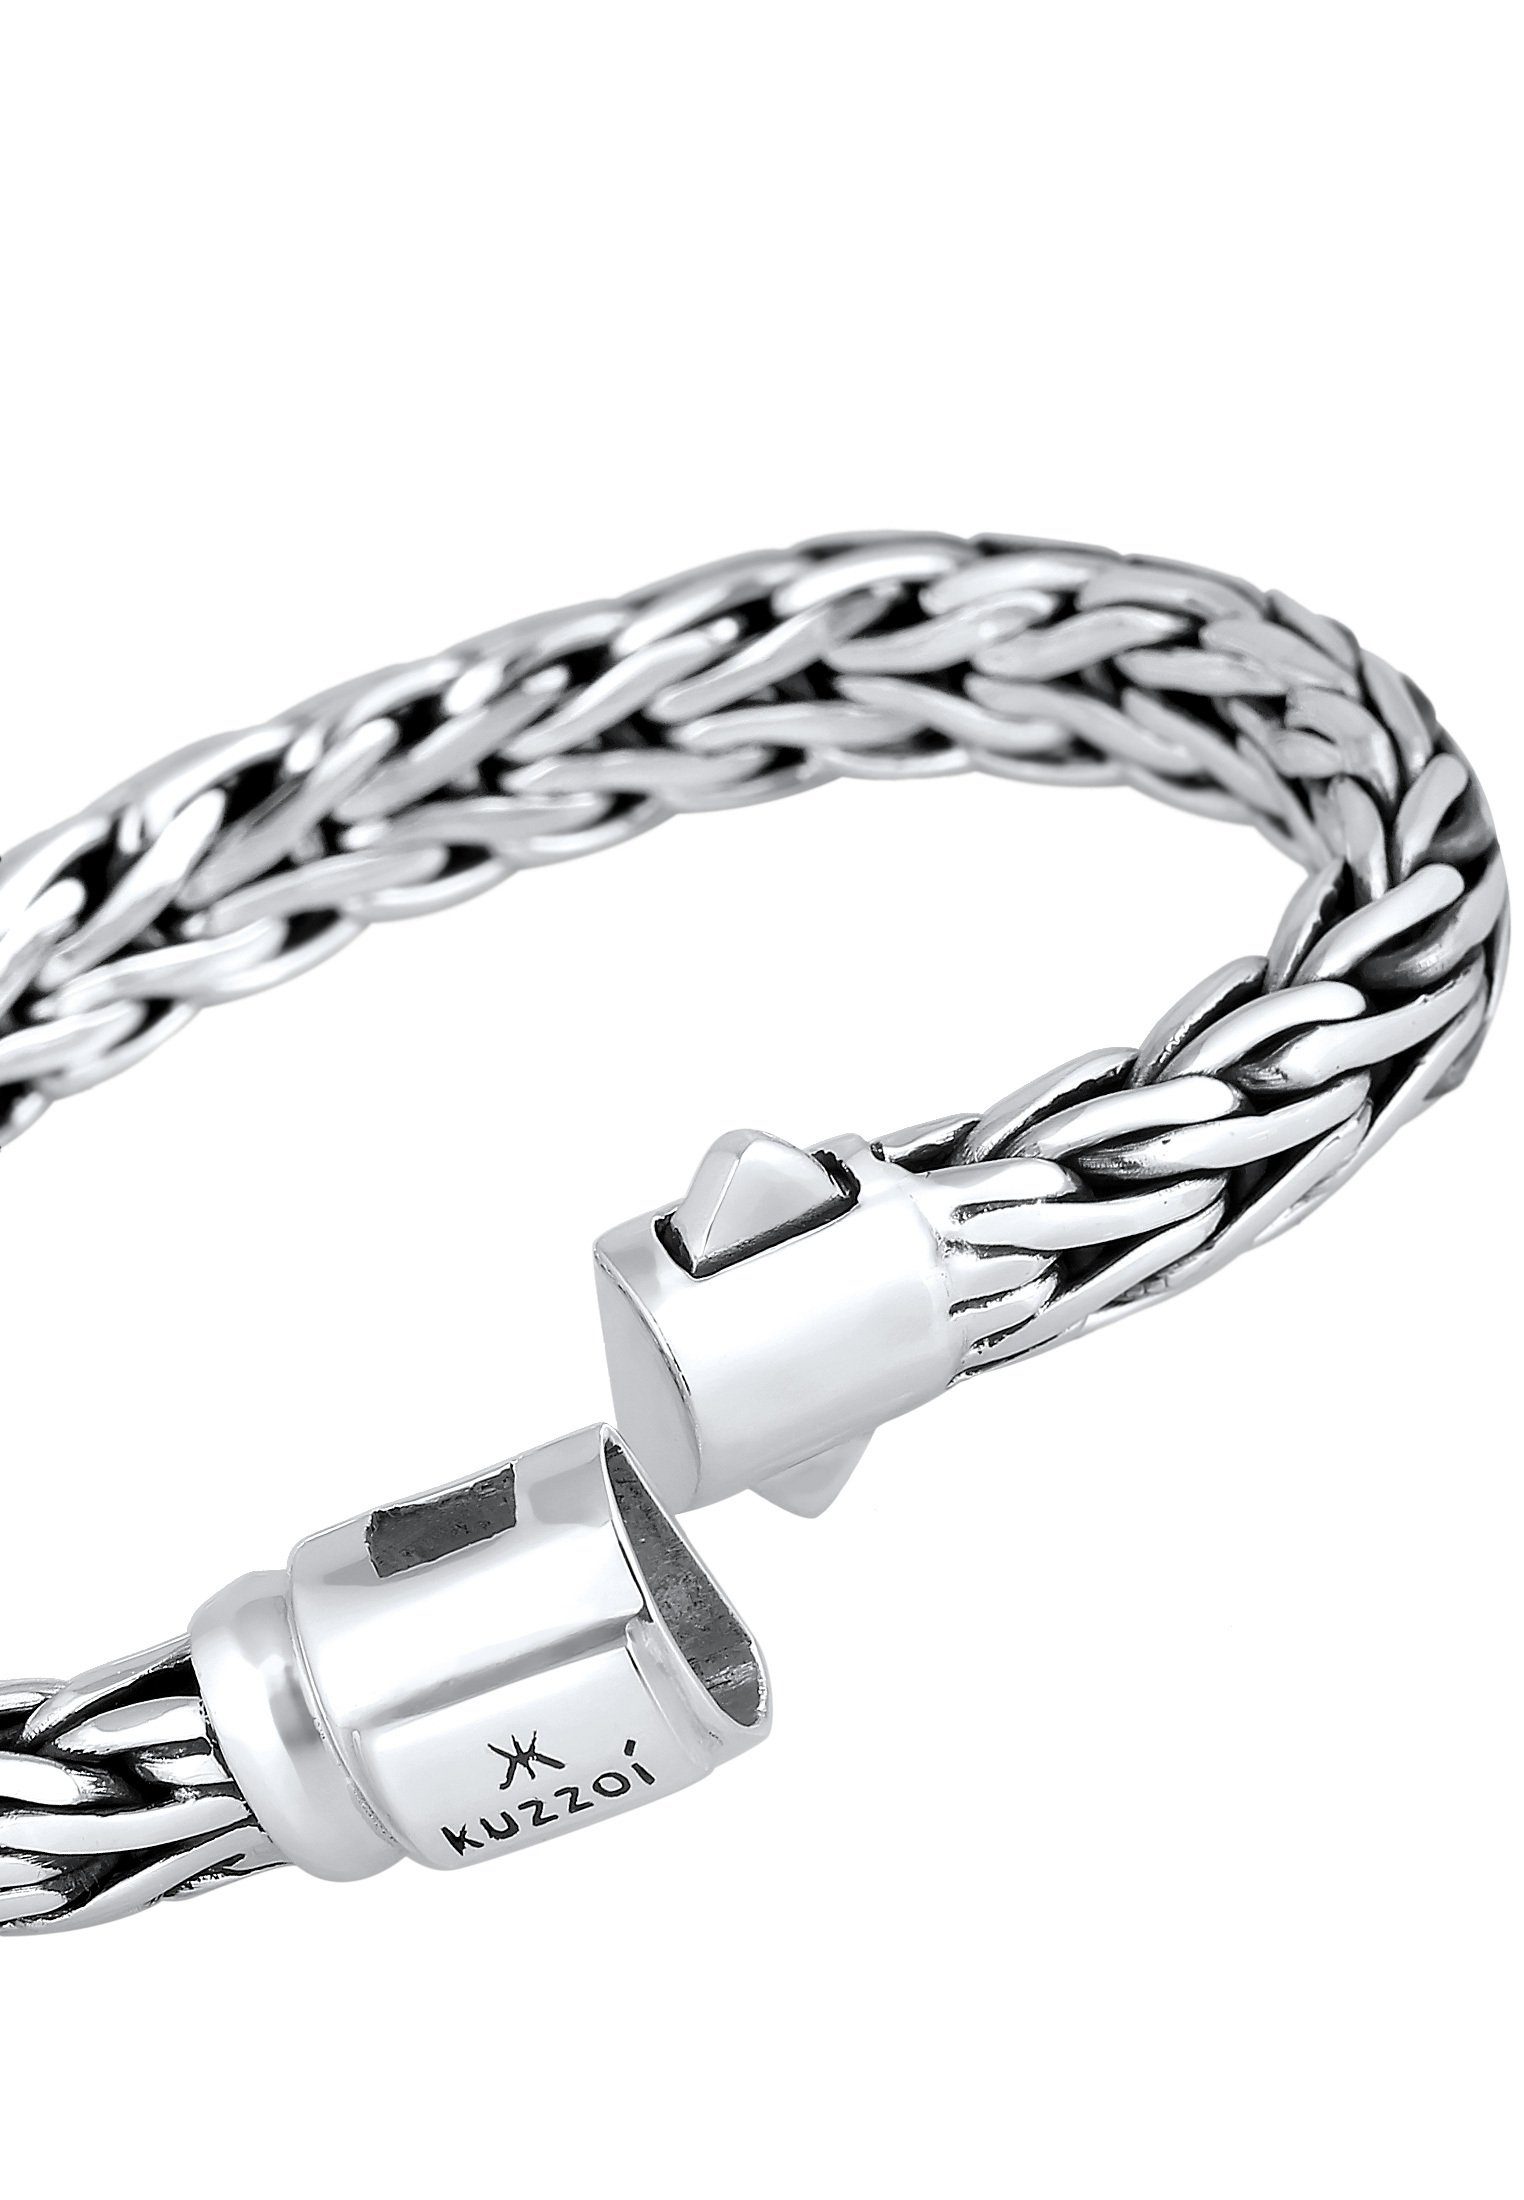 hochglanzpoliert Zopfmuster Gliederarmband Kuzzoi Unisex Silberschmuck Silber, Armband 925er anlaufgeschützt und